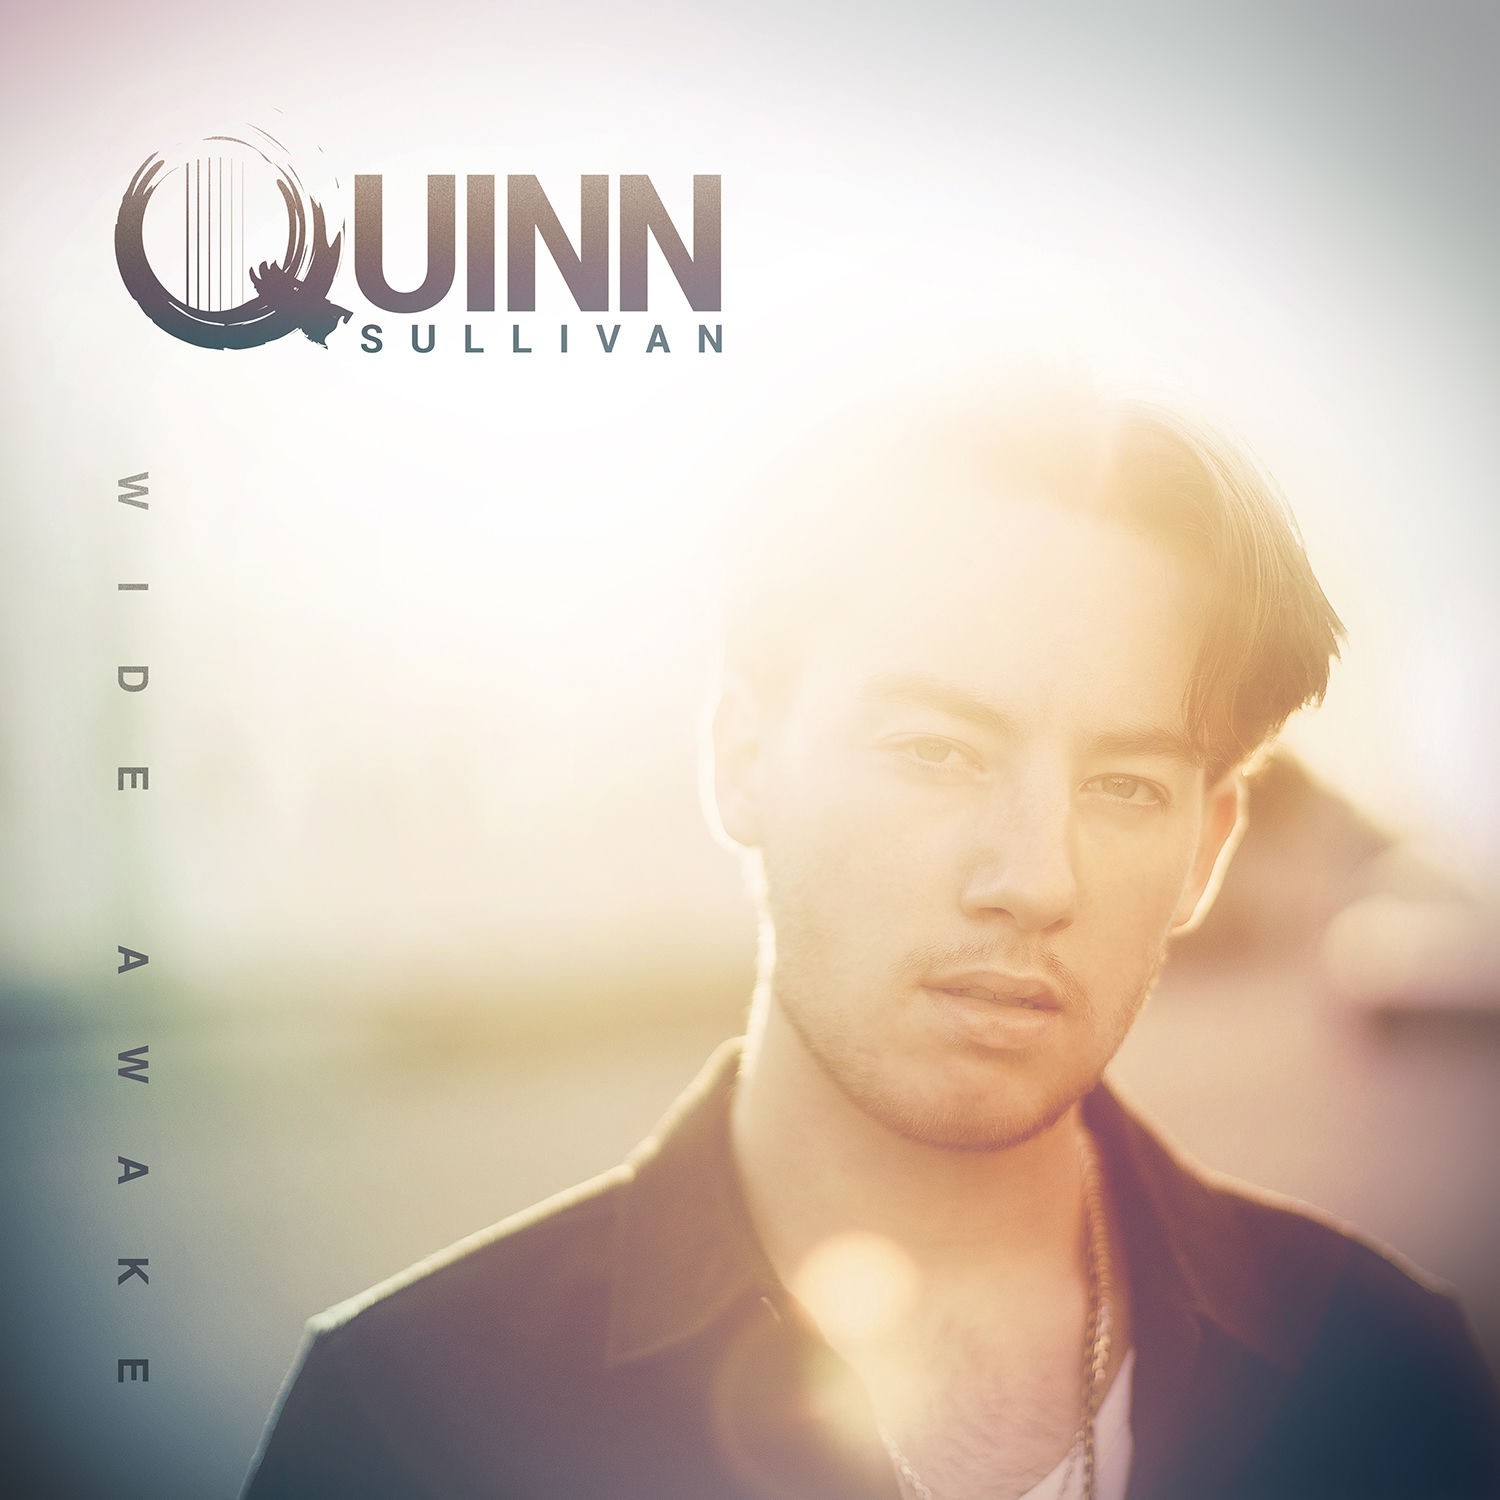 Quinn Sullivan - Wide Awake (2021) [FLAC 24bit/96kHz]